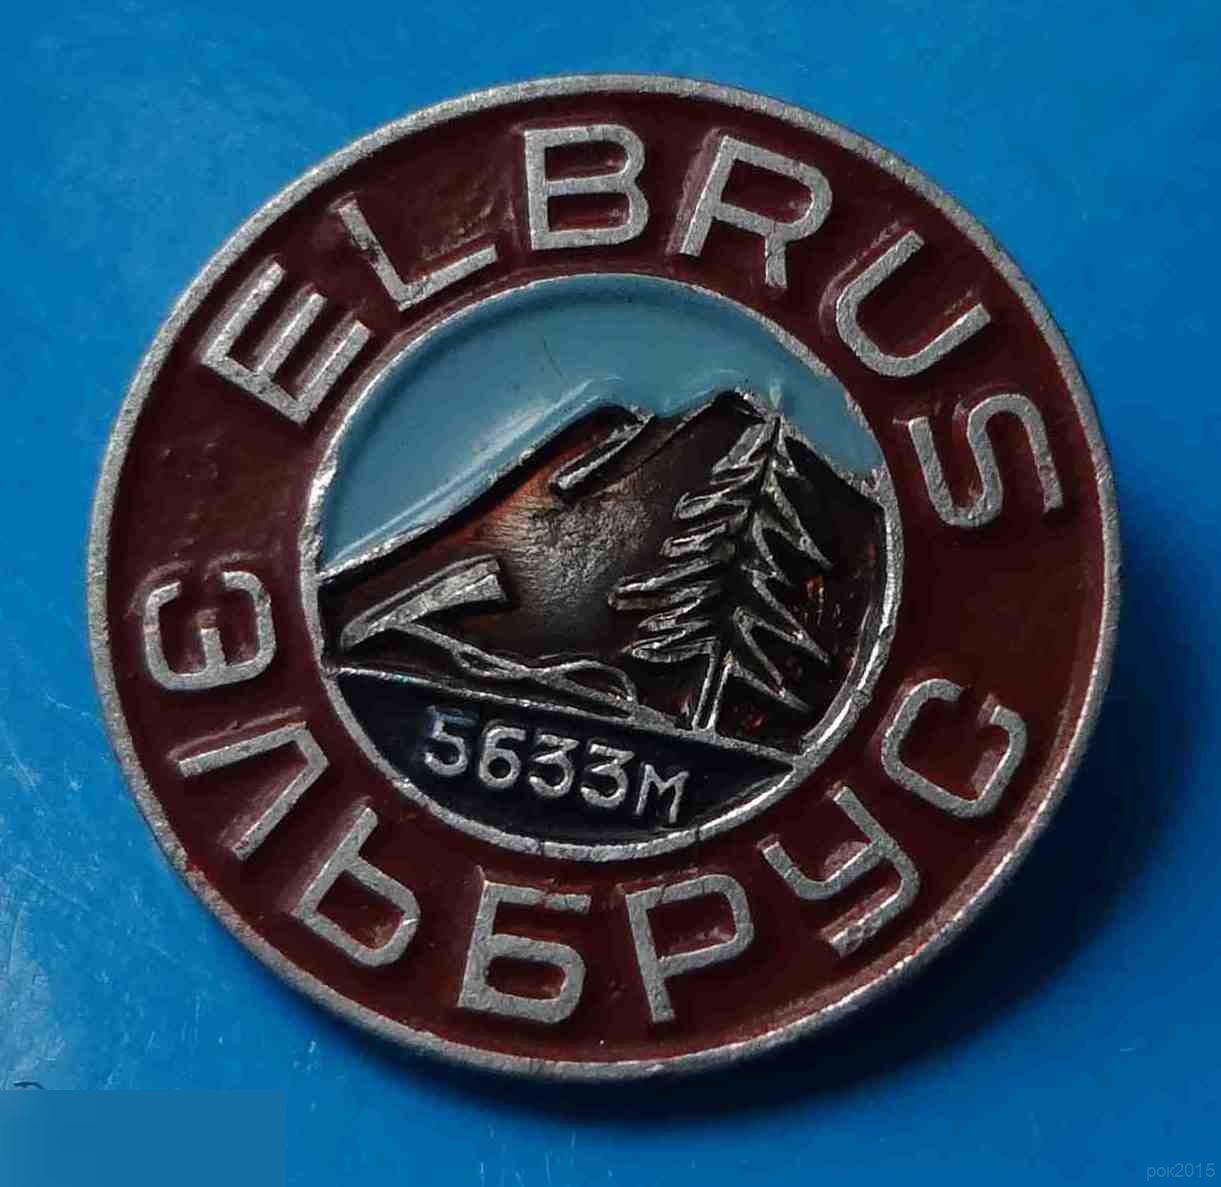 Эльбрус 5633 м Elbrus туризм альпинизм 3